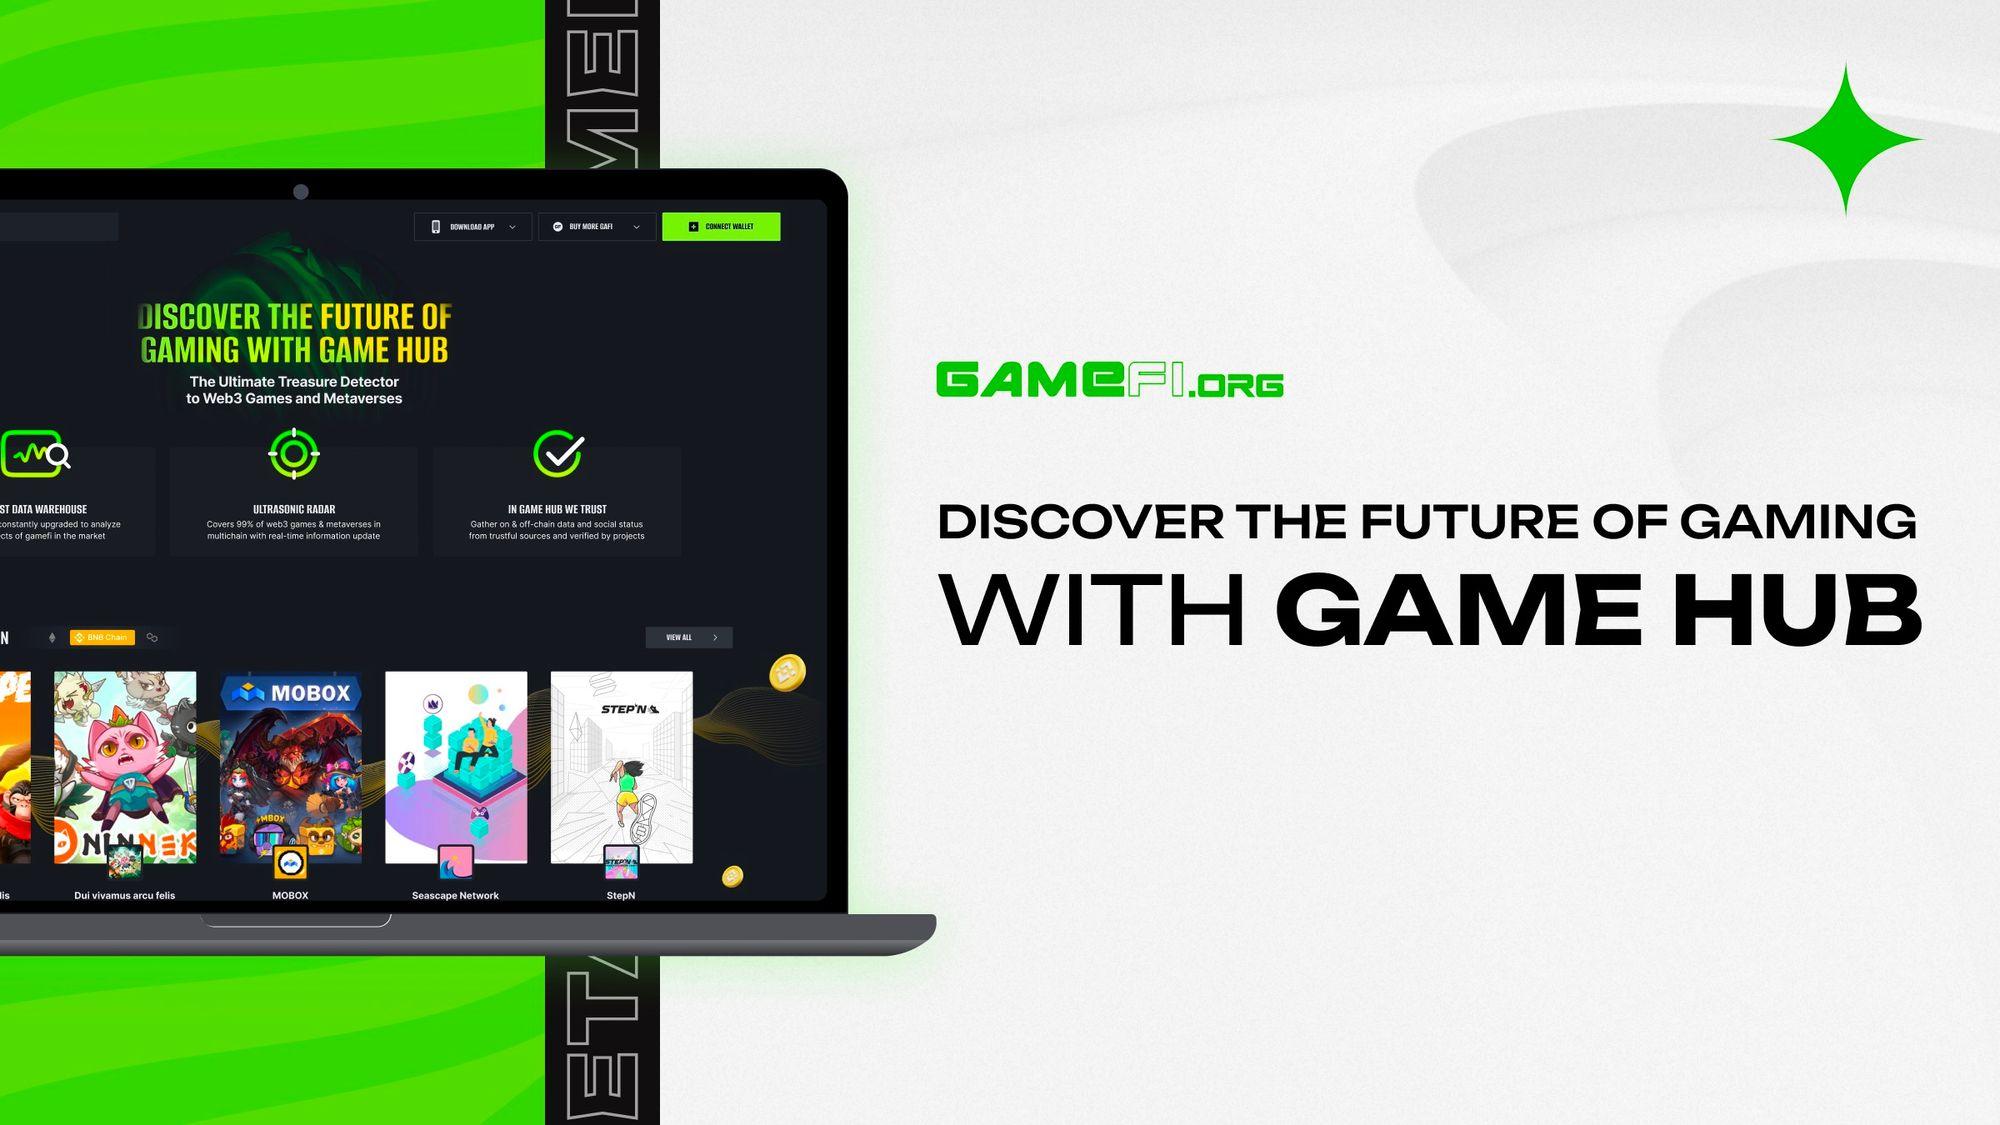 GAMEFI.ORG GAME HUB: The Ultimate Treasure Detector to Web3 Games and Metaverses